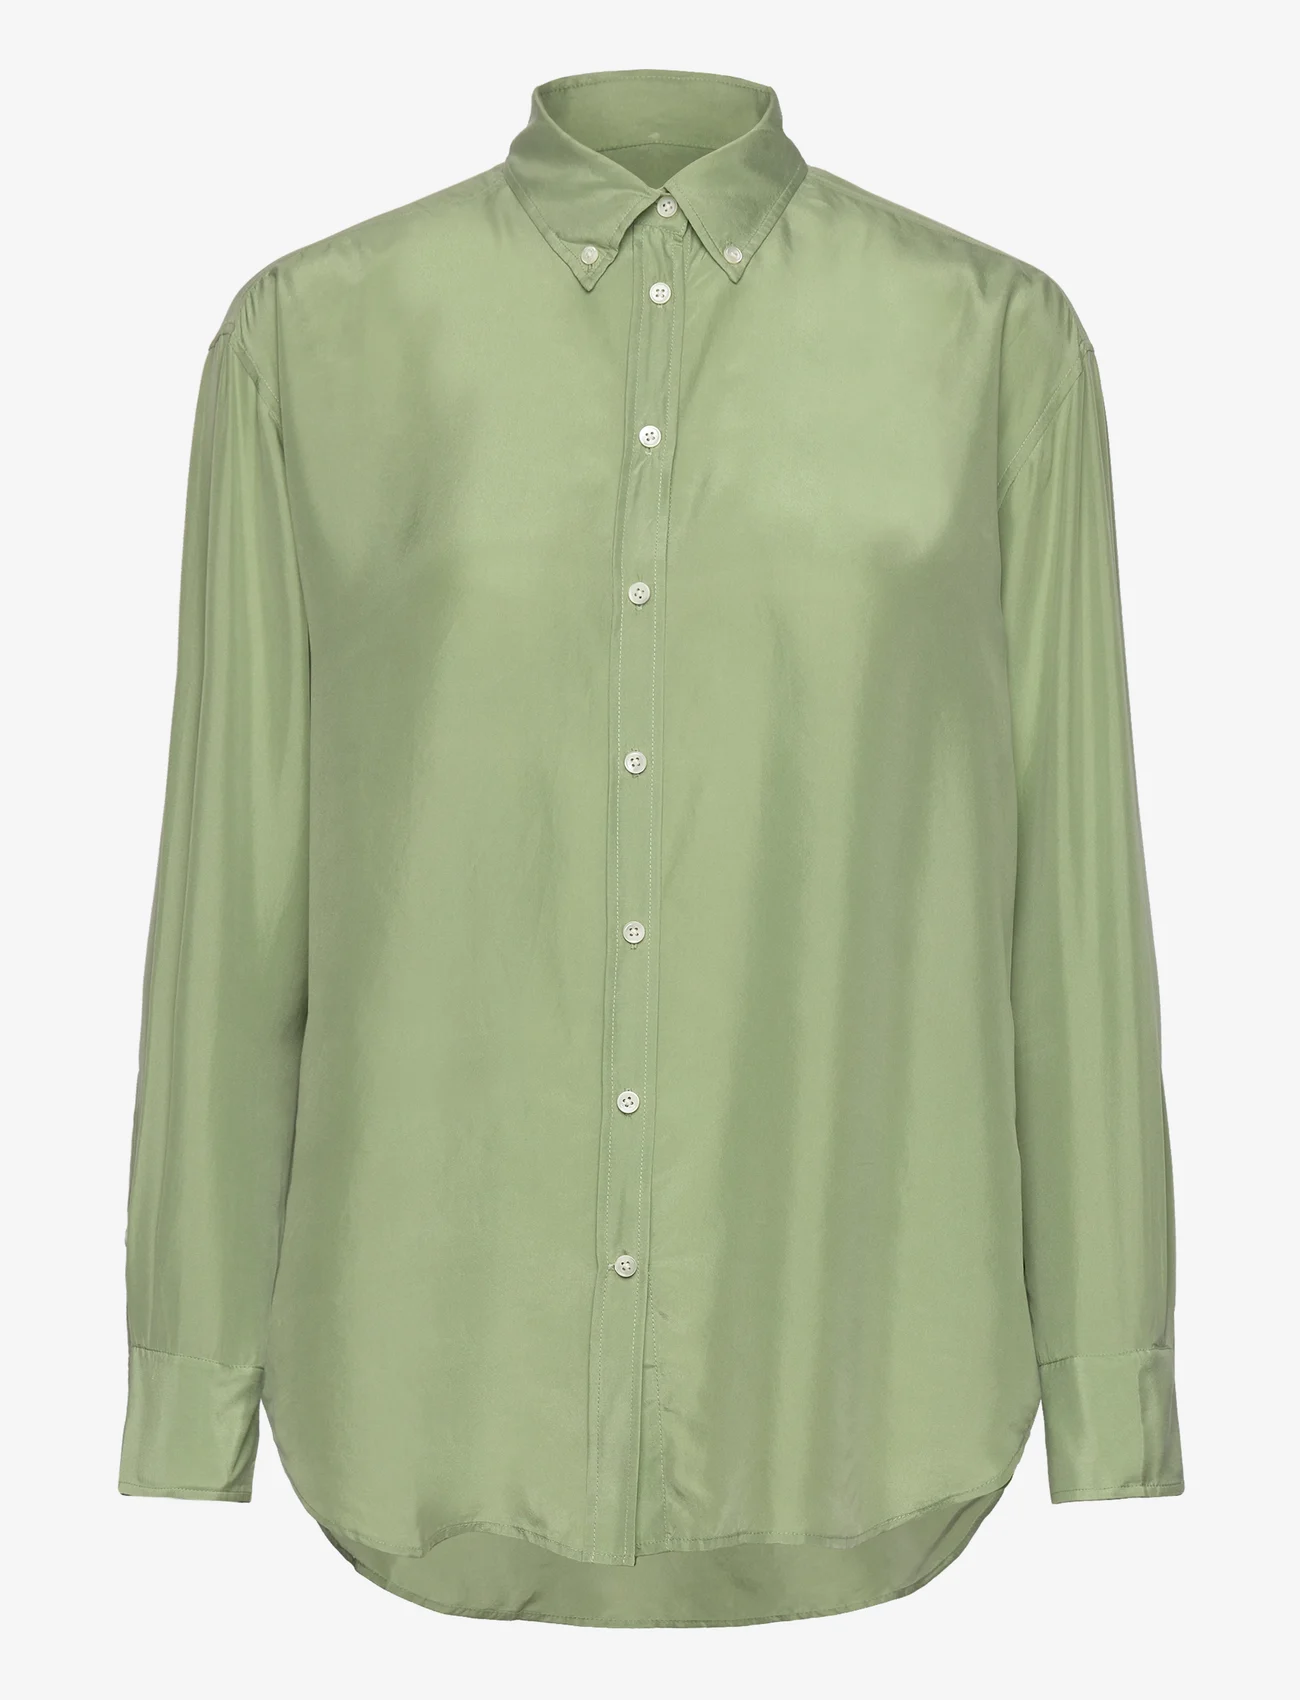 GANT - RELAXED SILK SHIRT - long-sleeved shirts - eucalyptus green - 0